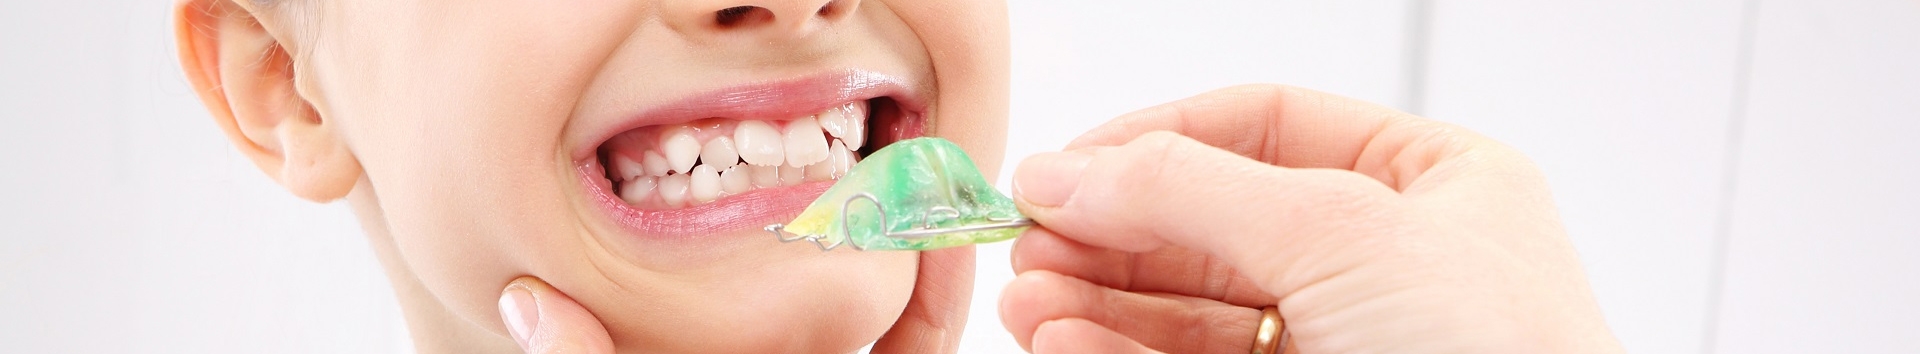 Dentes tortos: O que fazer? Fatos e lendas sobre doenças